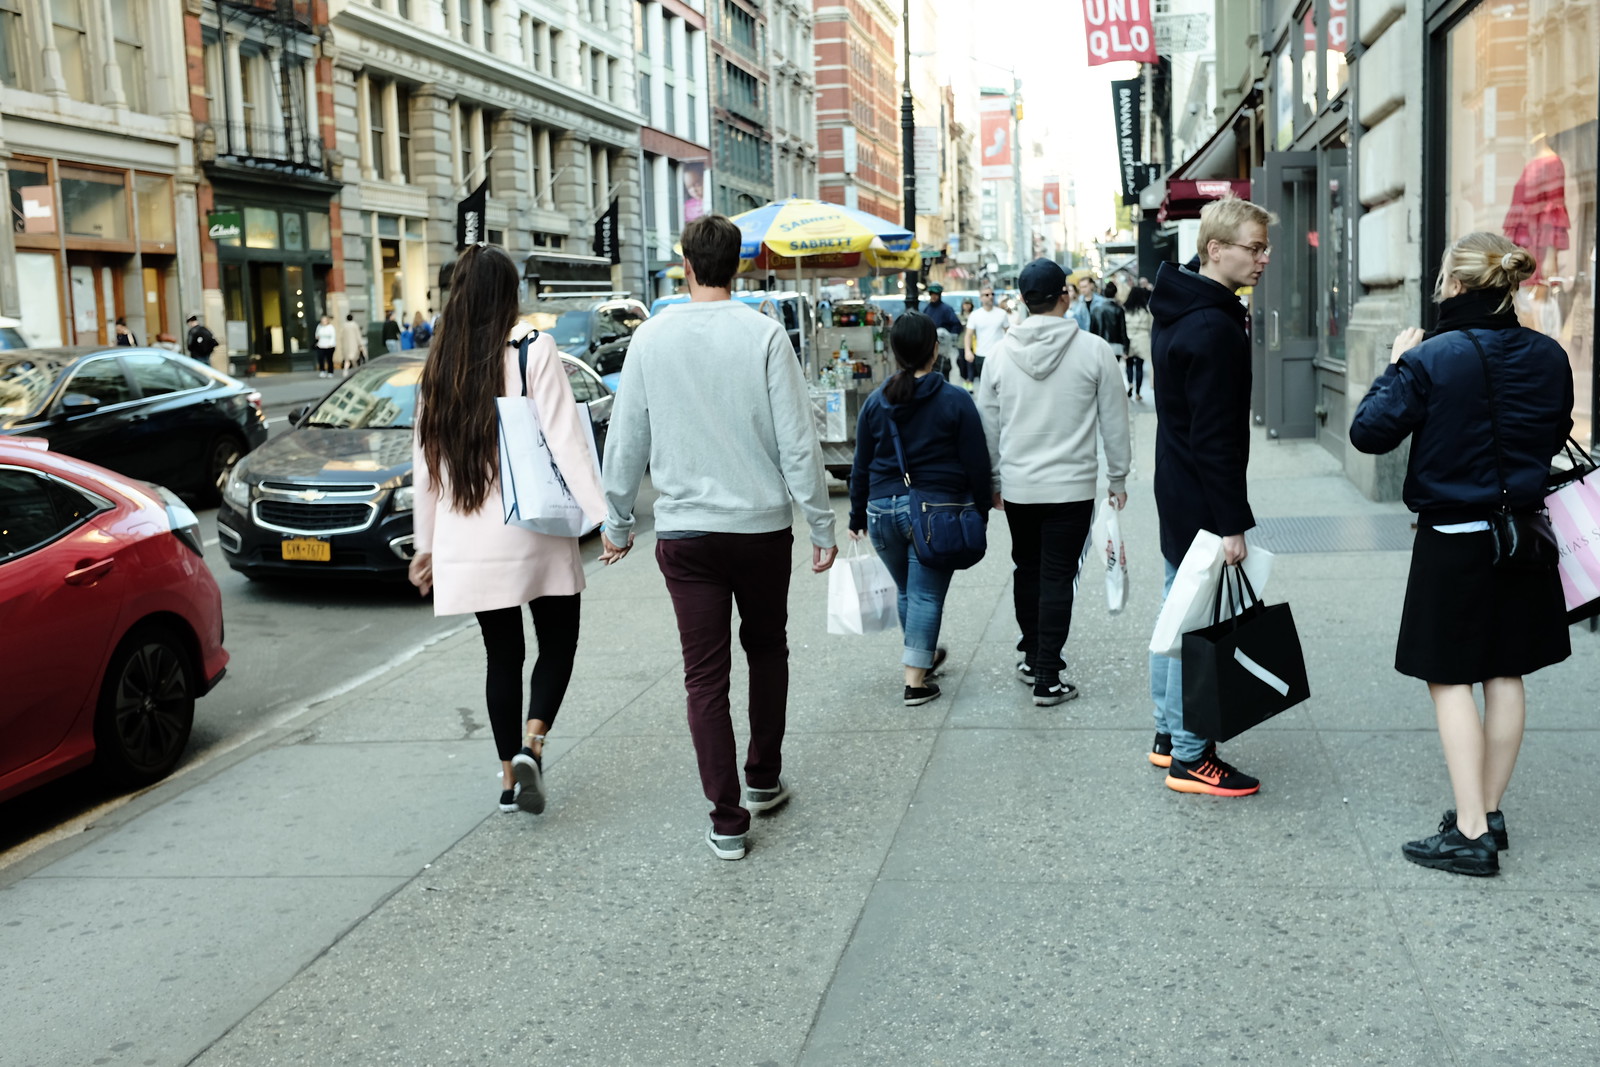 The New York Soho photo by FUJIFILM X100S.